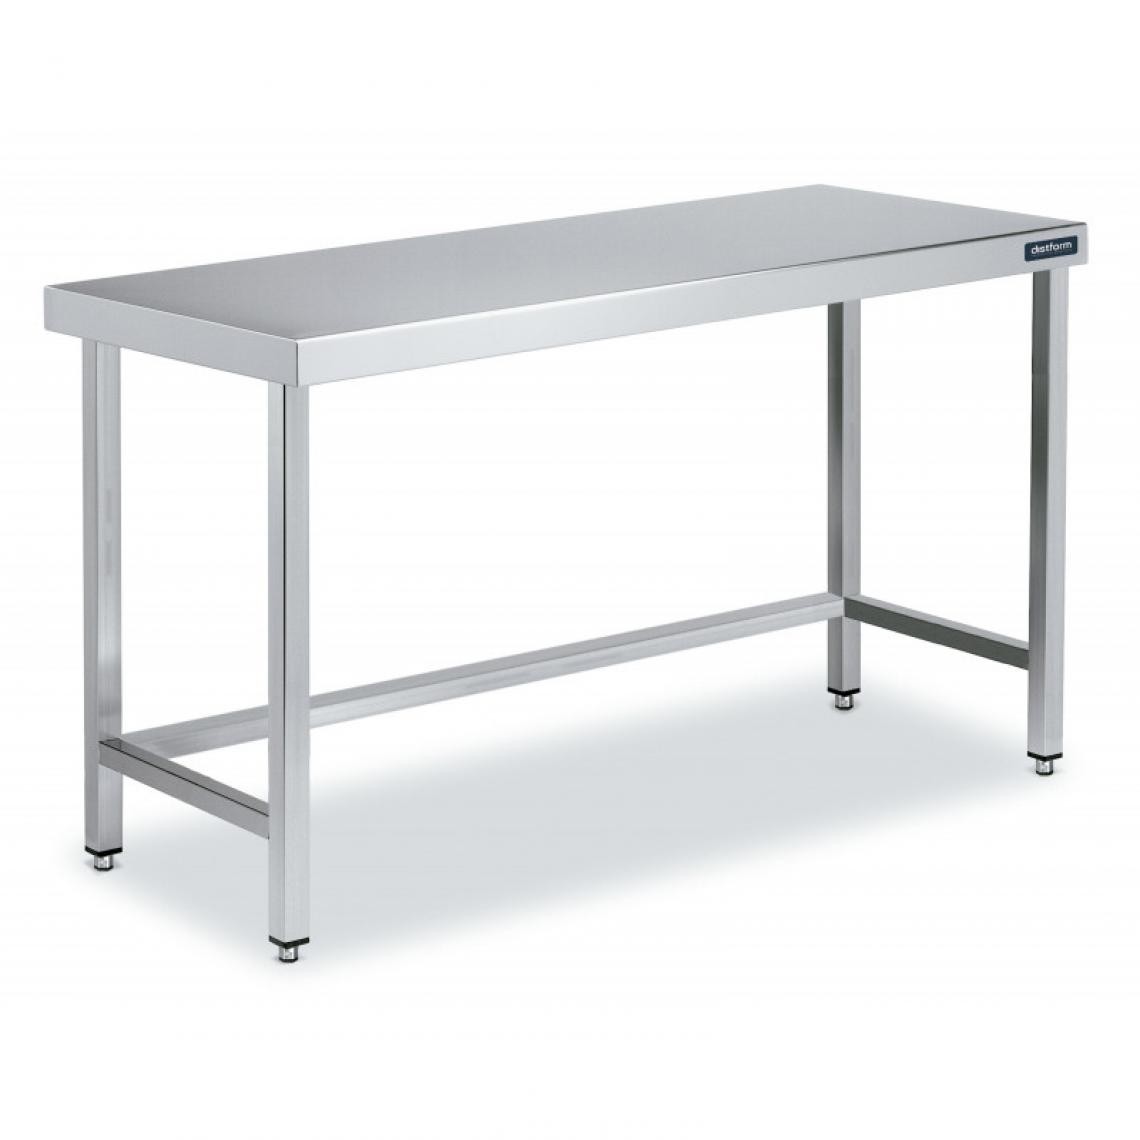 DISTFORM - Table Inox de Travail Gamme 900 avec Renforts - Distform - Acier inoxydable600x900 - Tables à manger